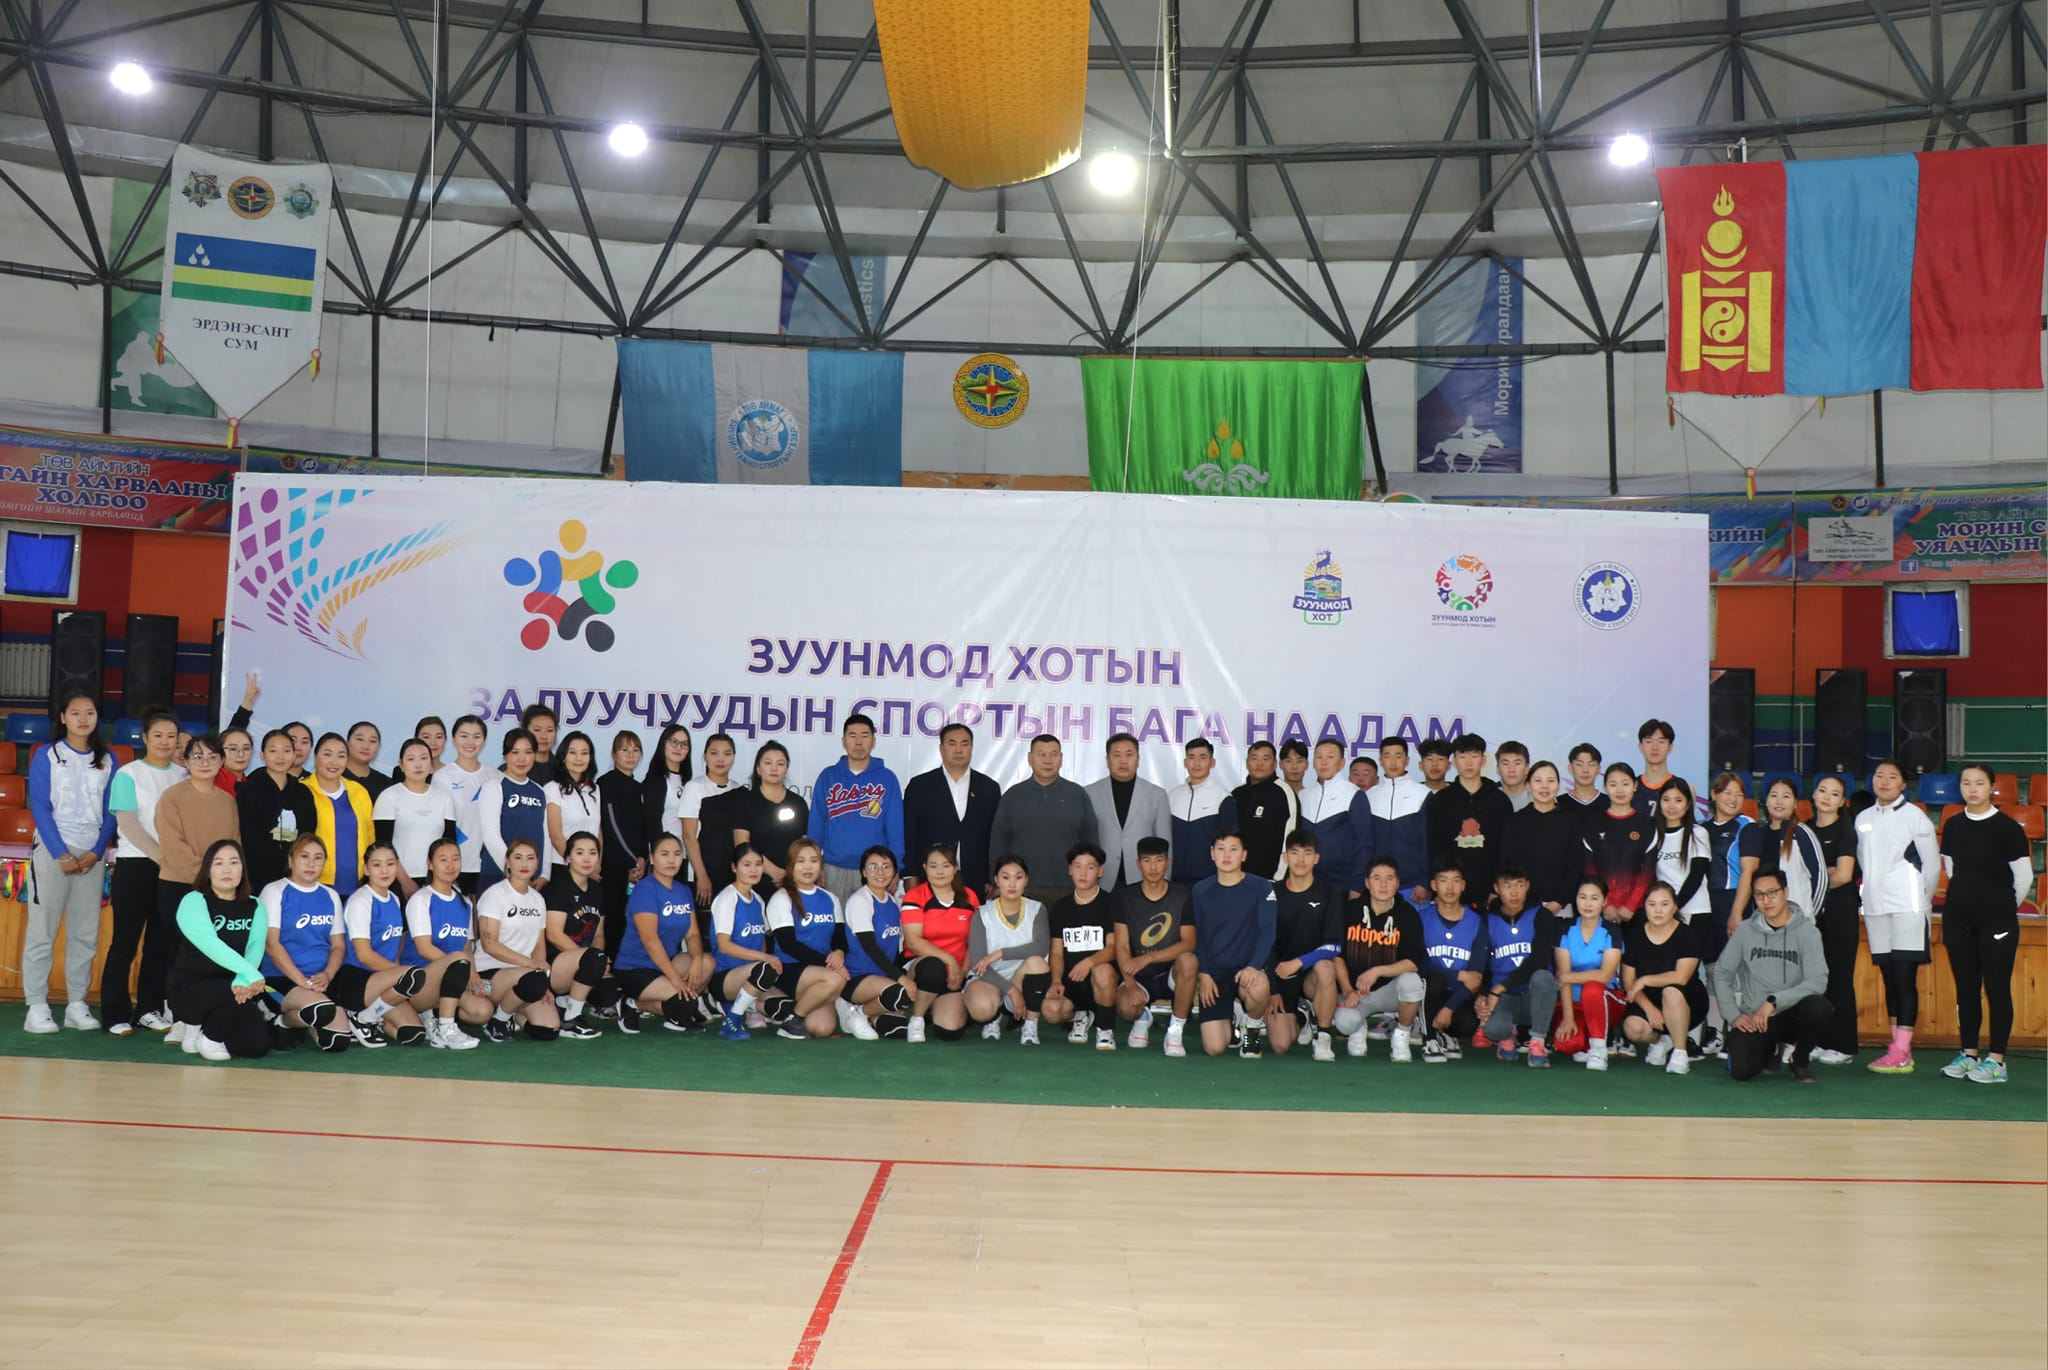 Төв аймгийн Зуунмод хотын залуучуудын спортын бага наадмын нээлтэд оролцов